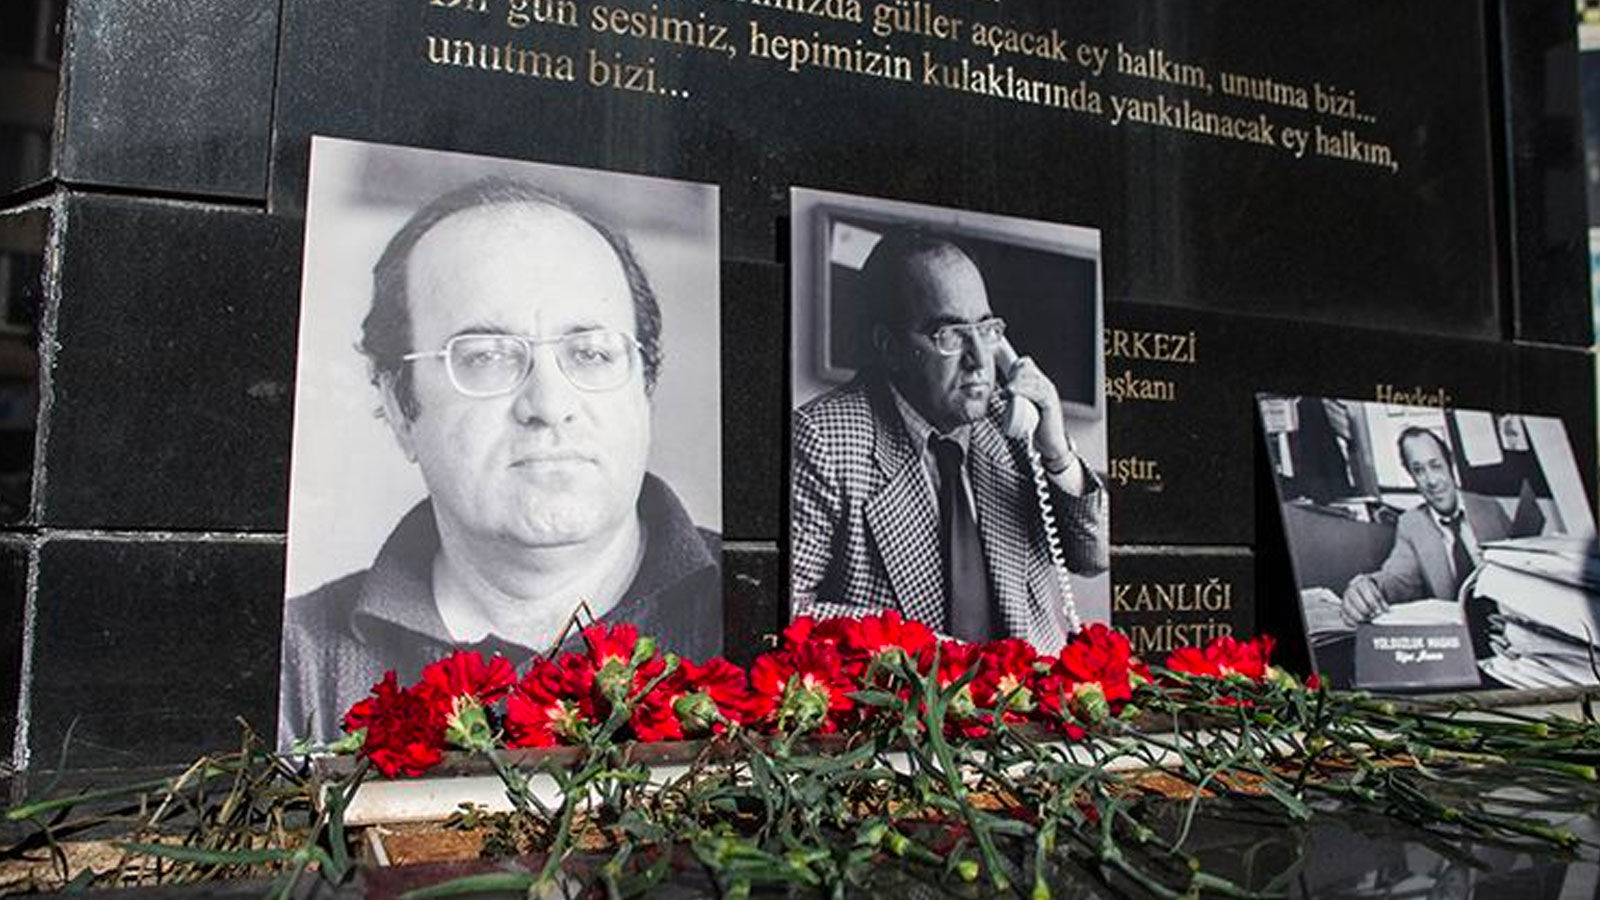 Uğur Mumcu 28 yıl önce katledildi: Vurulduk ey halkım, unutma bizi!